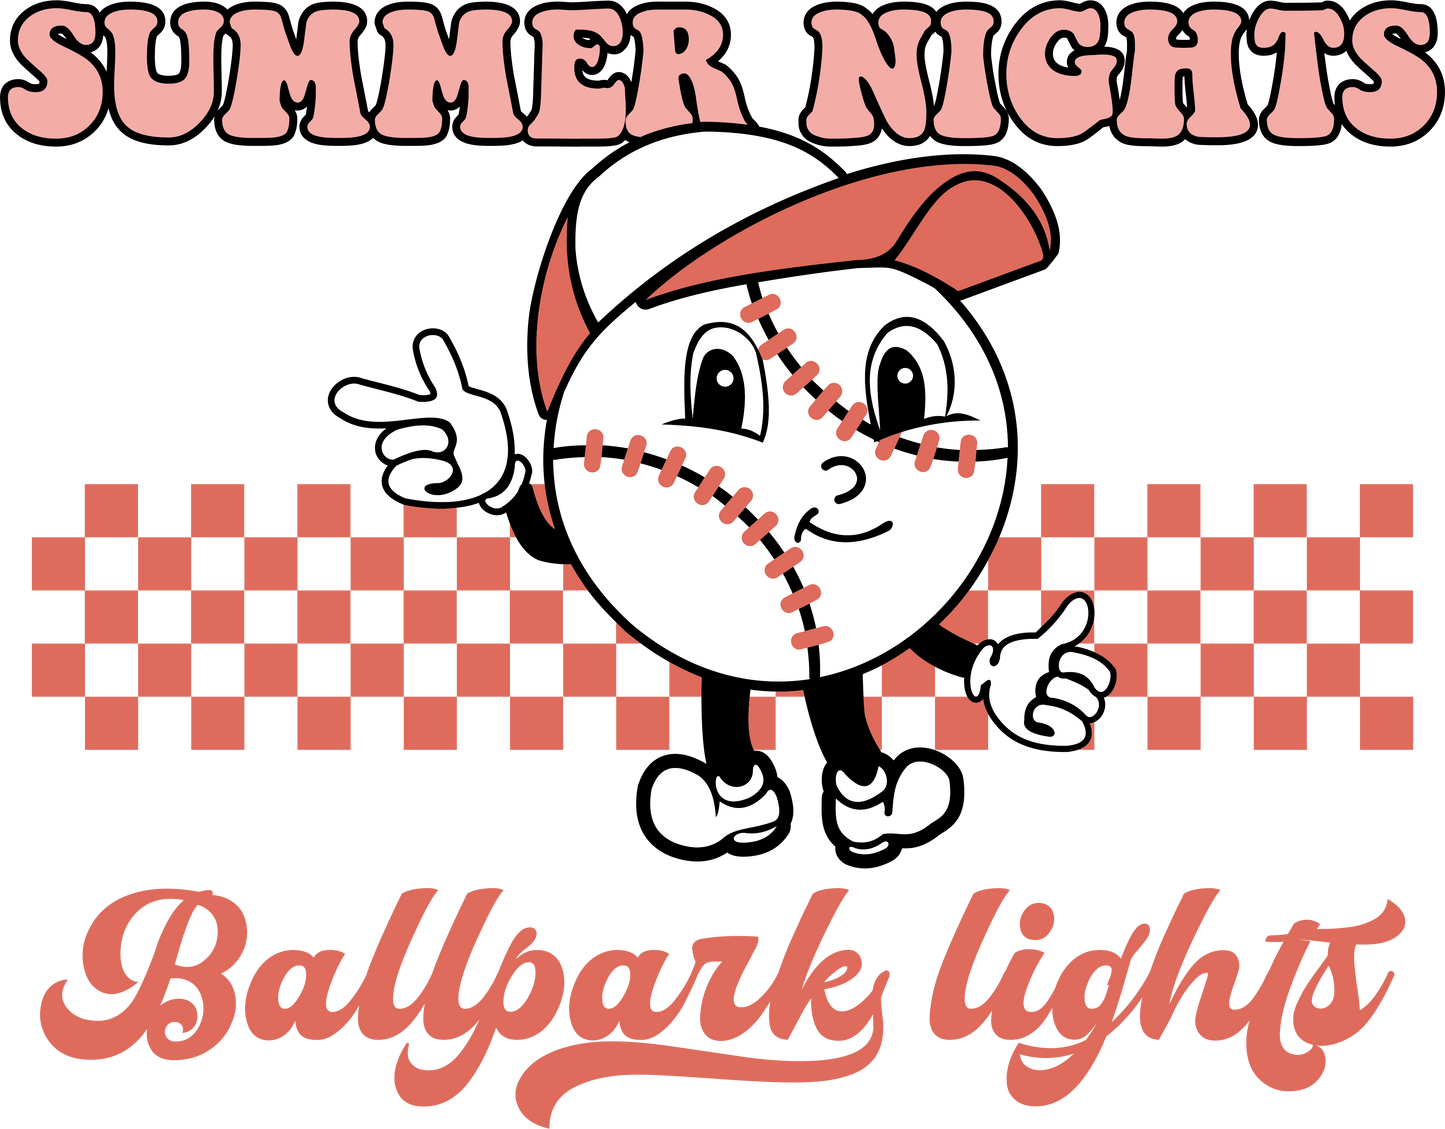 Baseball Summer Nights Ballpark Lights